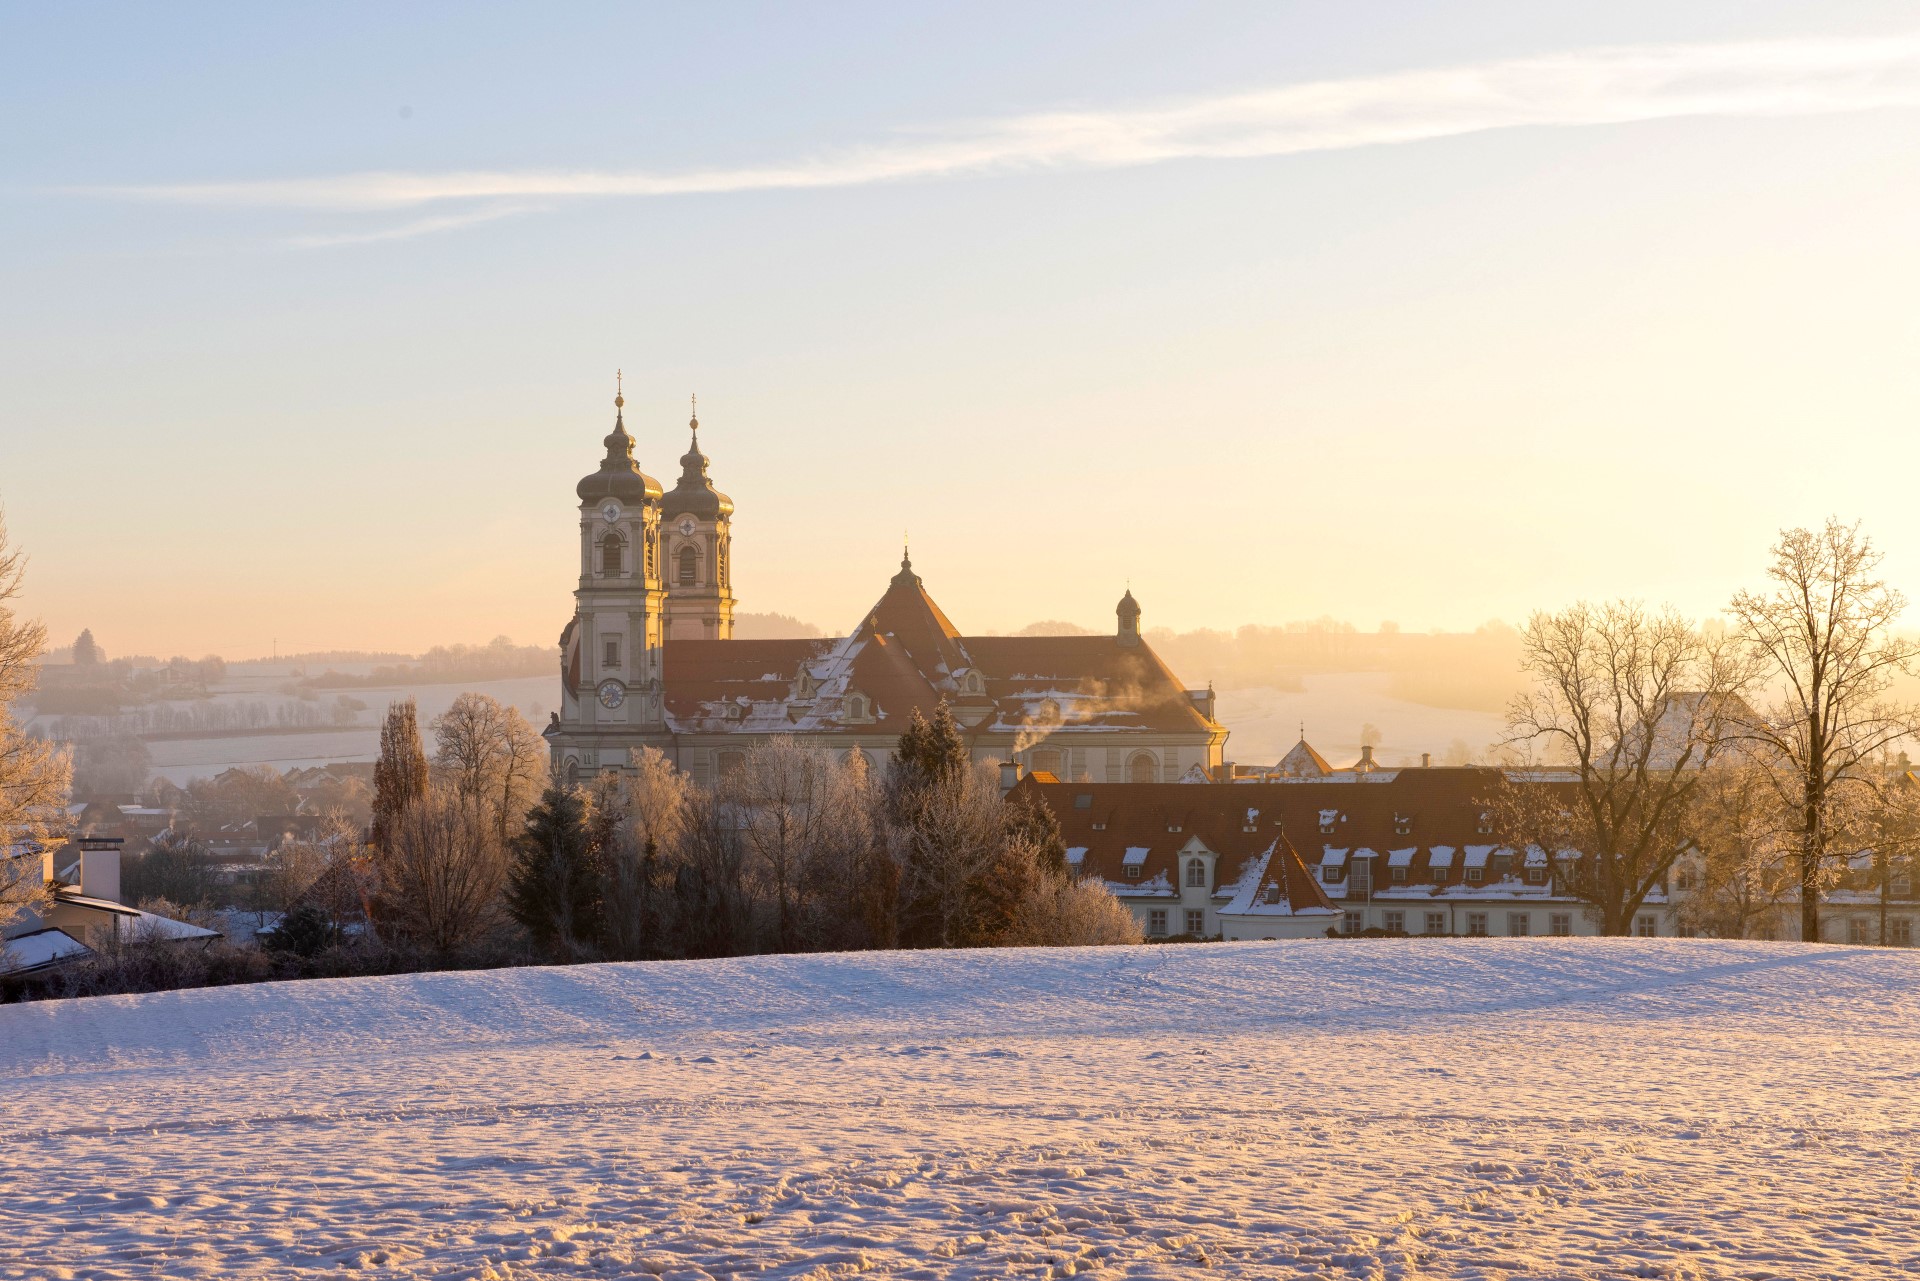 Allgäu: Basilika in Ottobeuren mit Extraportion Weihnachtsstimmung